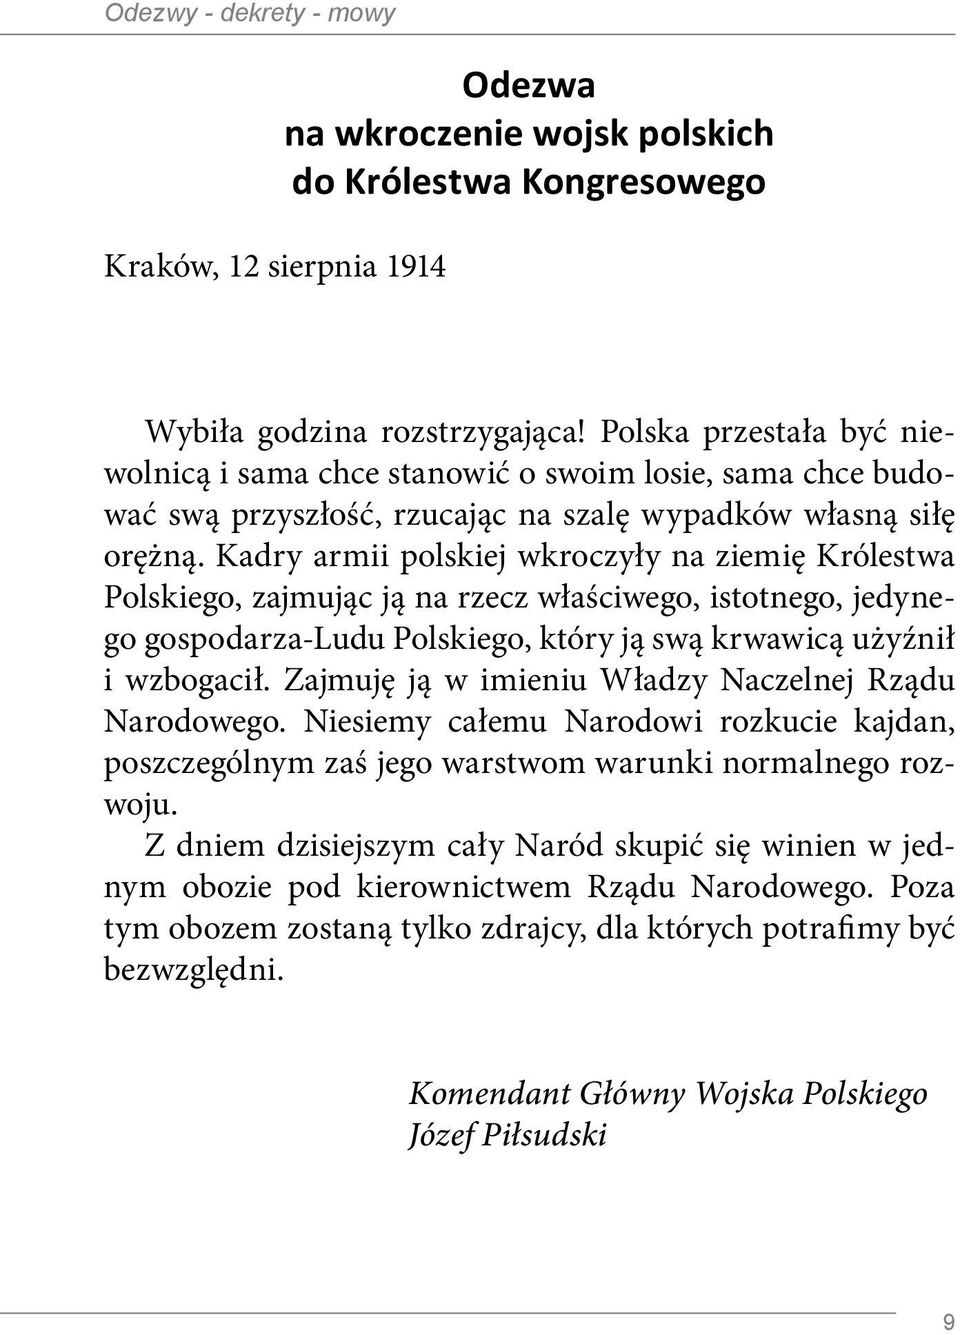 Kadry armii polskiej wkroczyły na ziemię Królestwa Polskiego, zajmując ją na rzecz właściwego, istotnego, jedynego gospodarza-ludu Polskiego, który ją swą krwawicą użyźnił i wzbogacił.